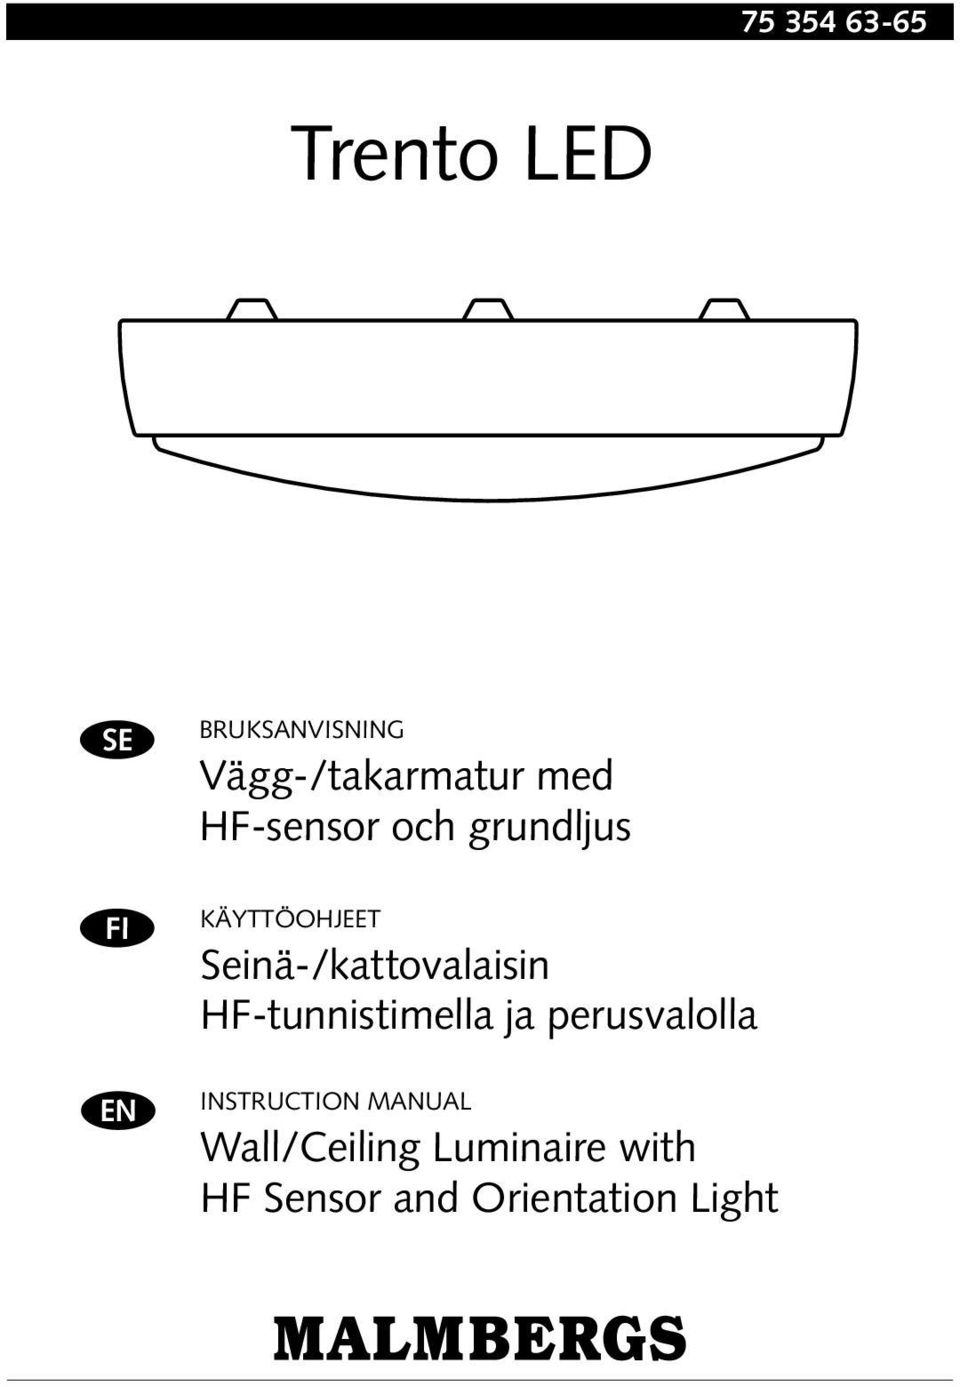 Seinä-/kattovalaisin HF-tunnistimella ja perusvalolla